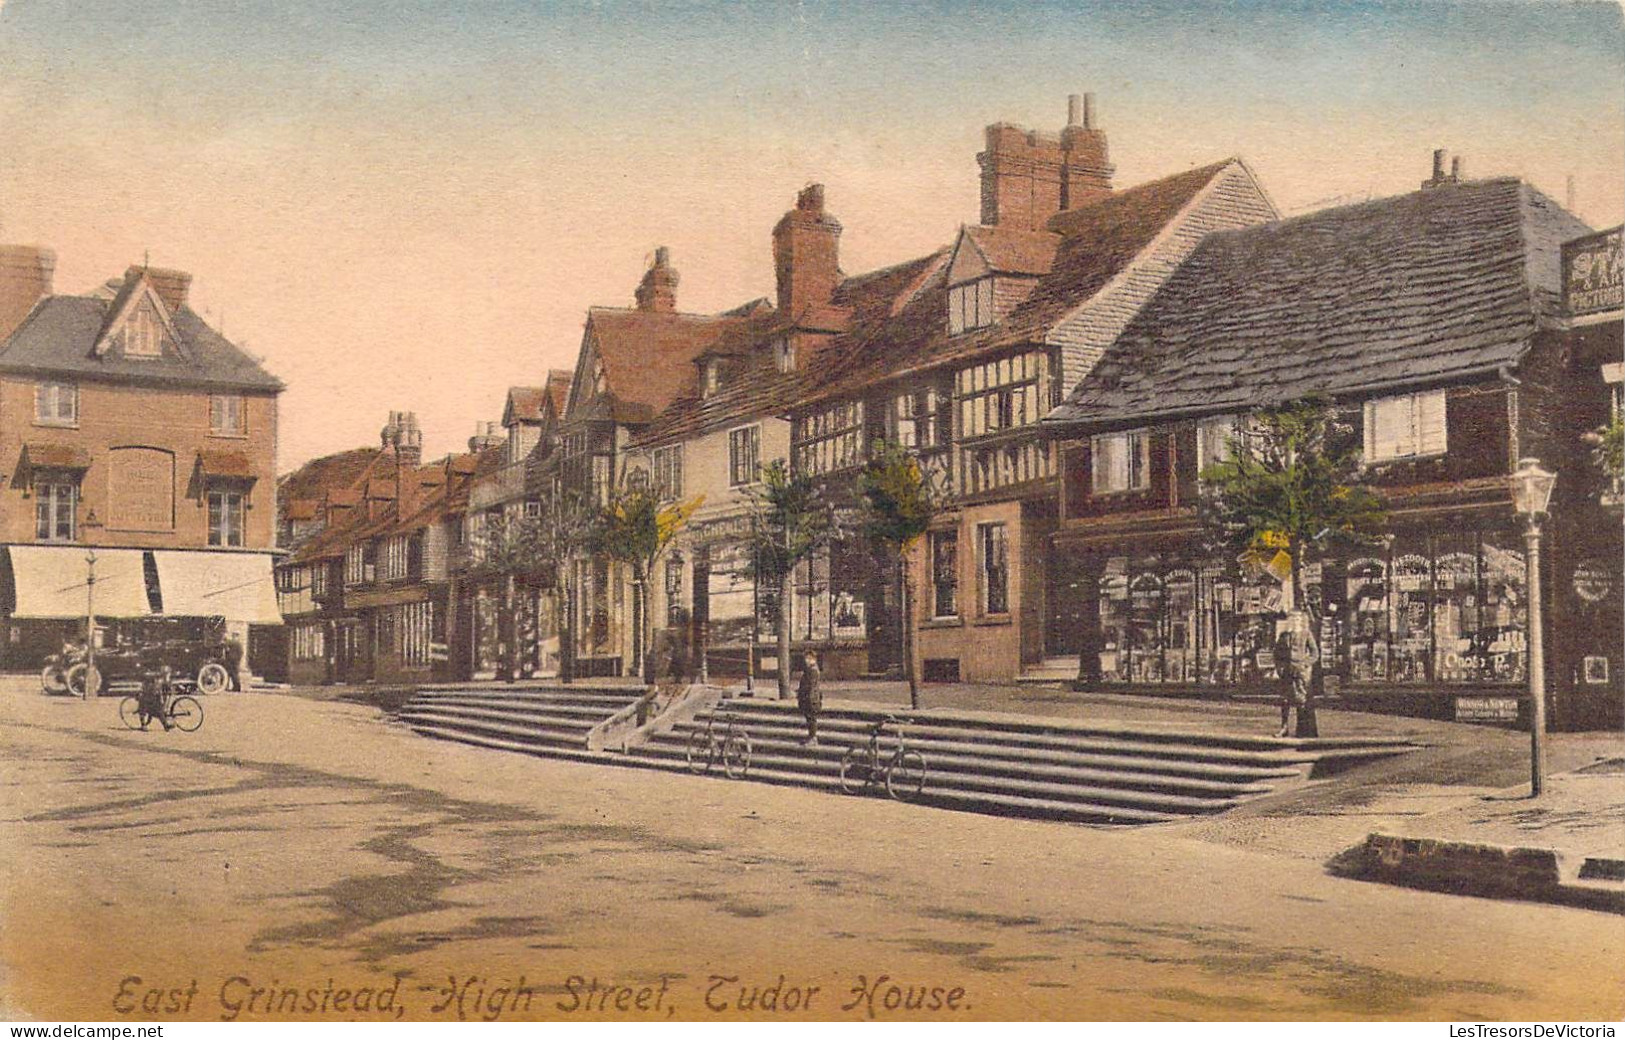 ANGLETERRE - Southampton - East Grinstead - High Street - Tudor House - Carte Postale Ancienne - Southampton